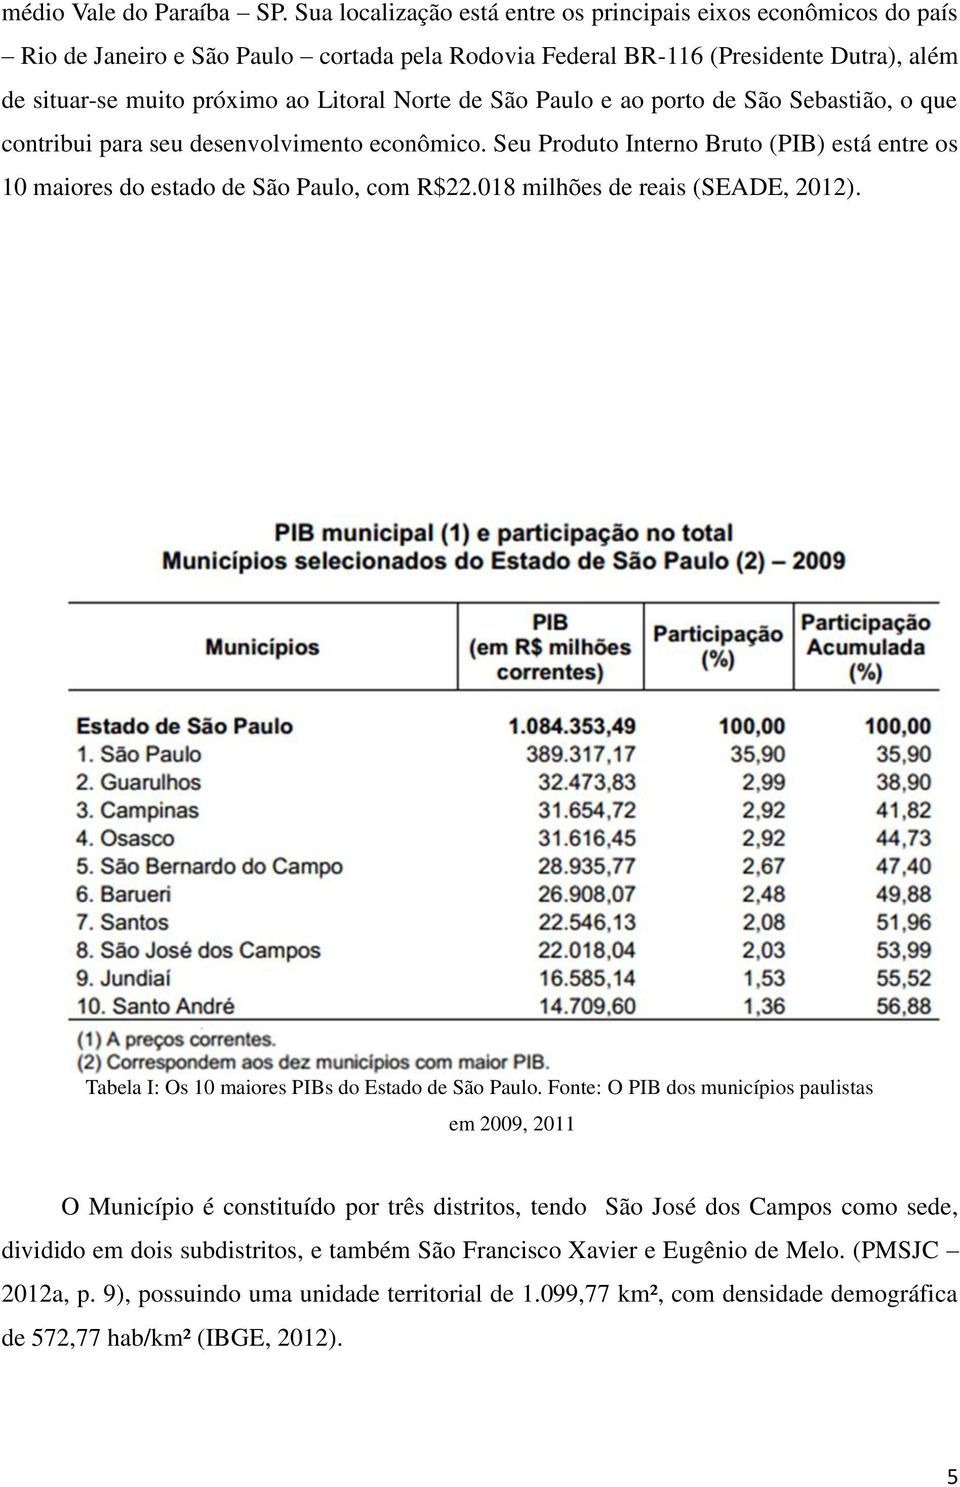 de São Paulo e ao porto de São Sebastião, o que contribui para seu desenvolvimento econômico. Seu Produto Interno Bruto (PIB) está entre os 10 maiores do estado de São Paulo, com R$22.